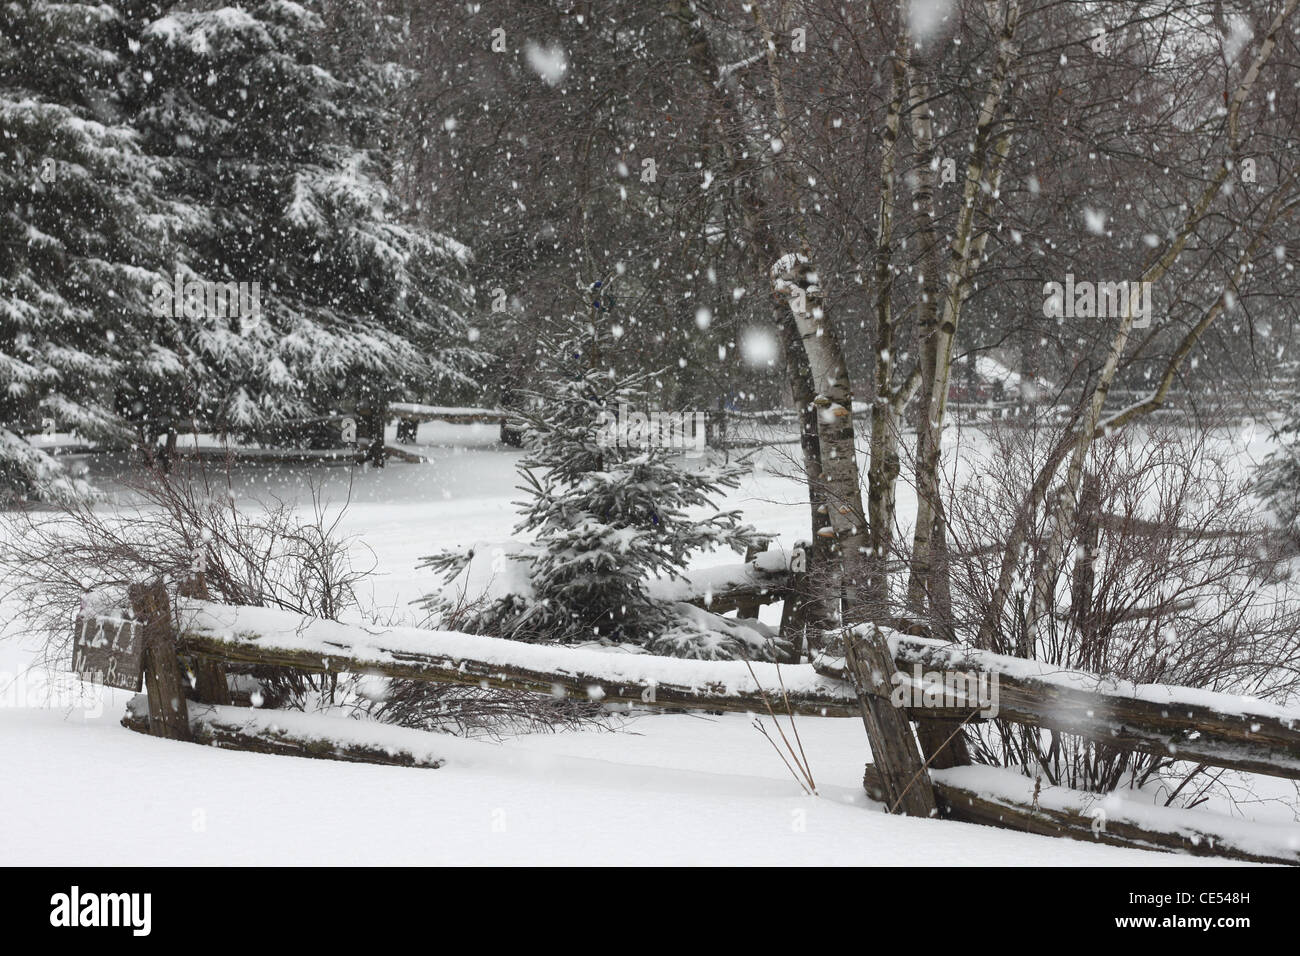 La neige qui tombe en hiver un cadre rural au Québec, Canada Banque D'Images